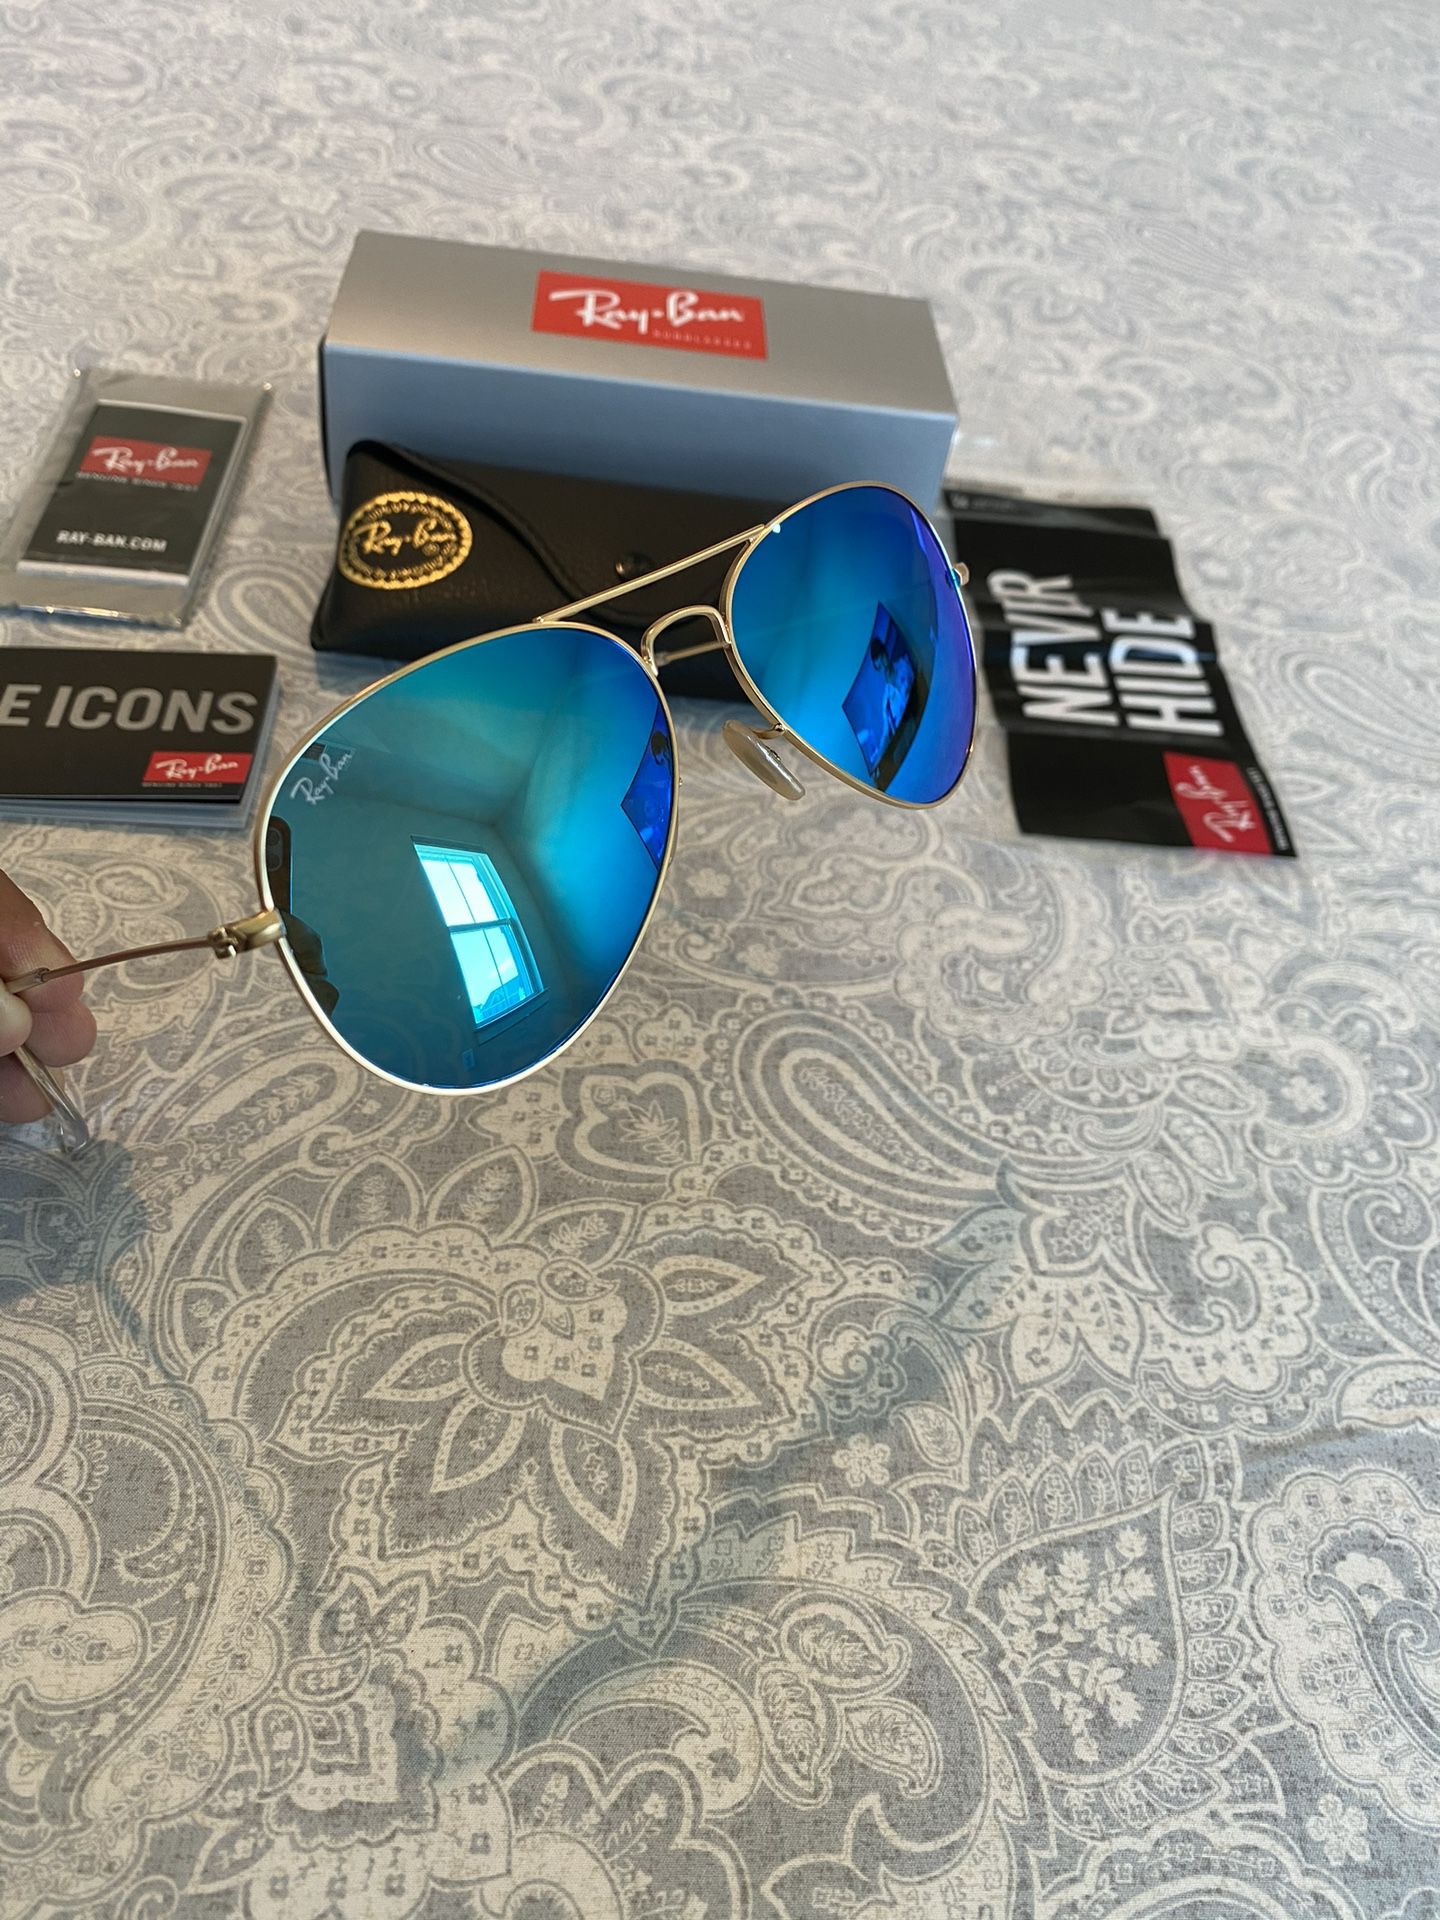 New Rayban Aviator Blue Mirrored Sunglasses